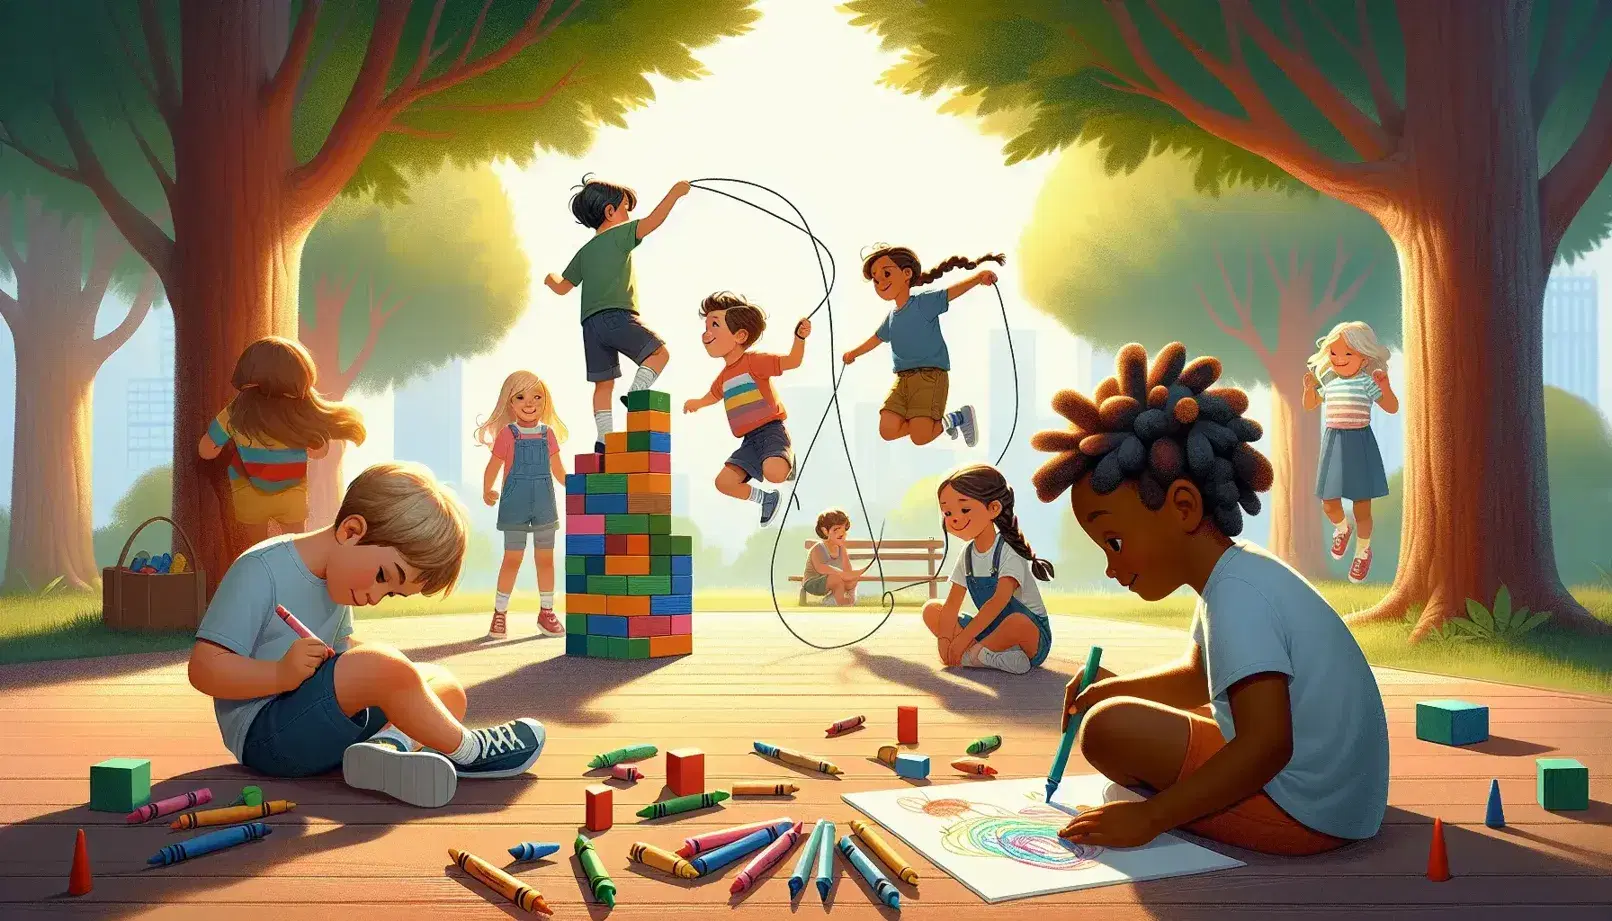 Niños jugando en parque soleado con bloques de colores, dibujando con crayones y saltando la cuerda bajo un árbol frondoso, adulto supervisa en un banco.